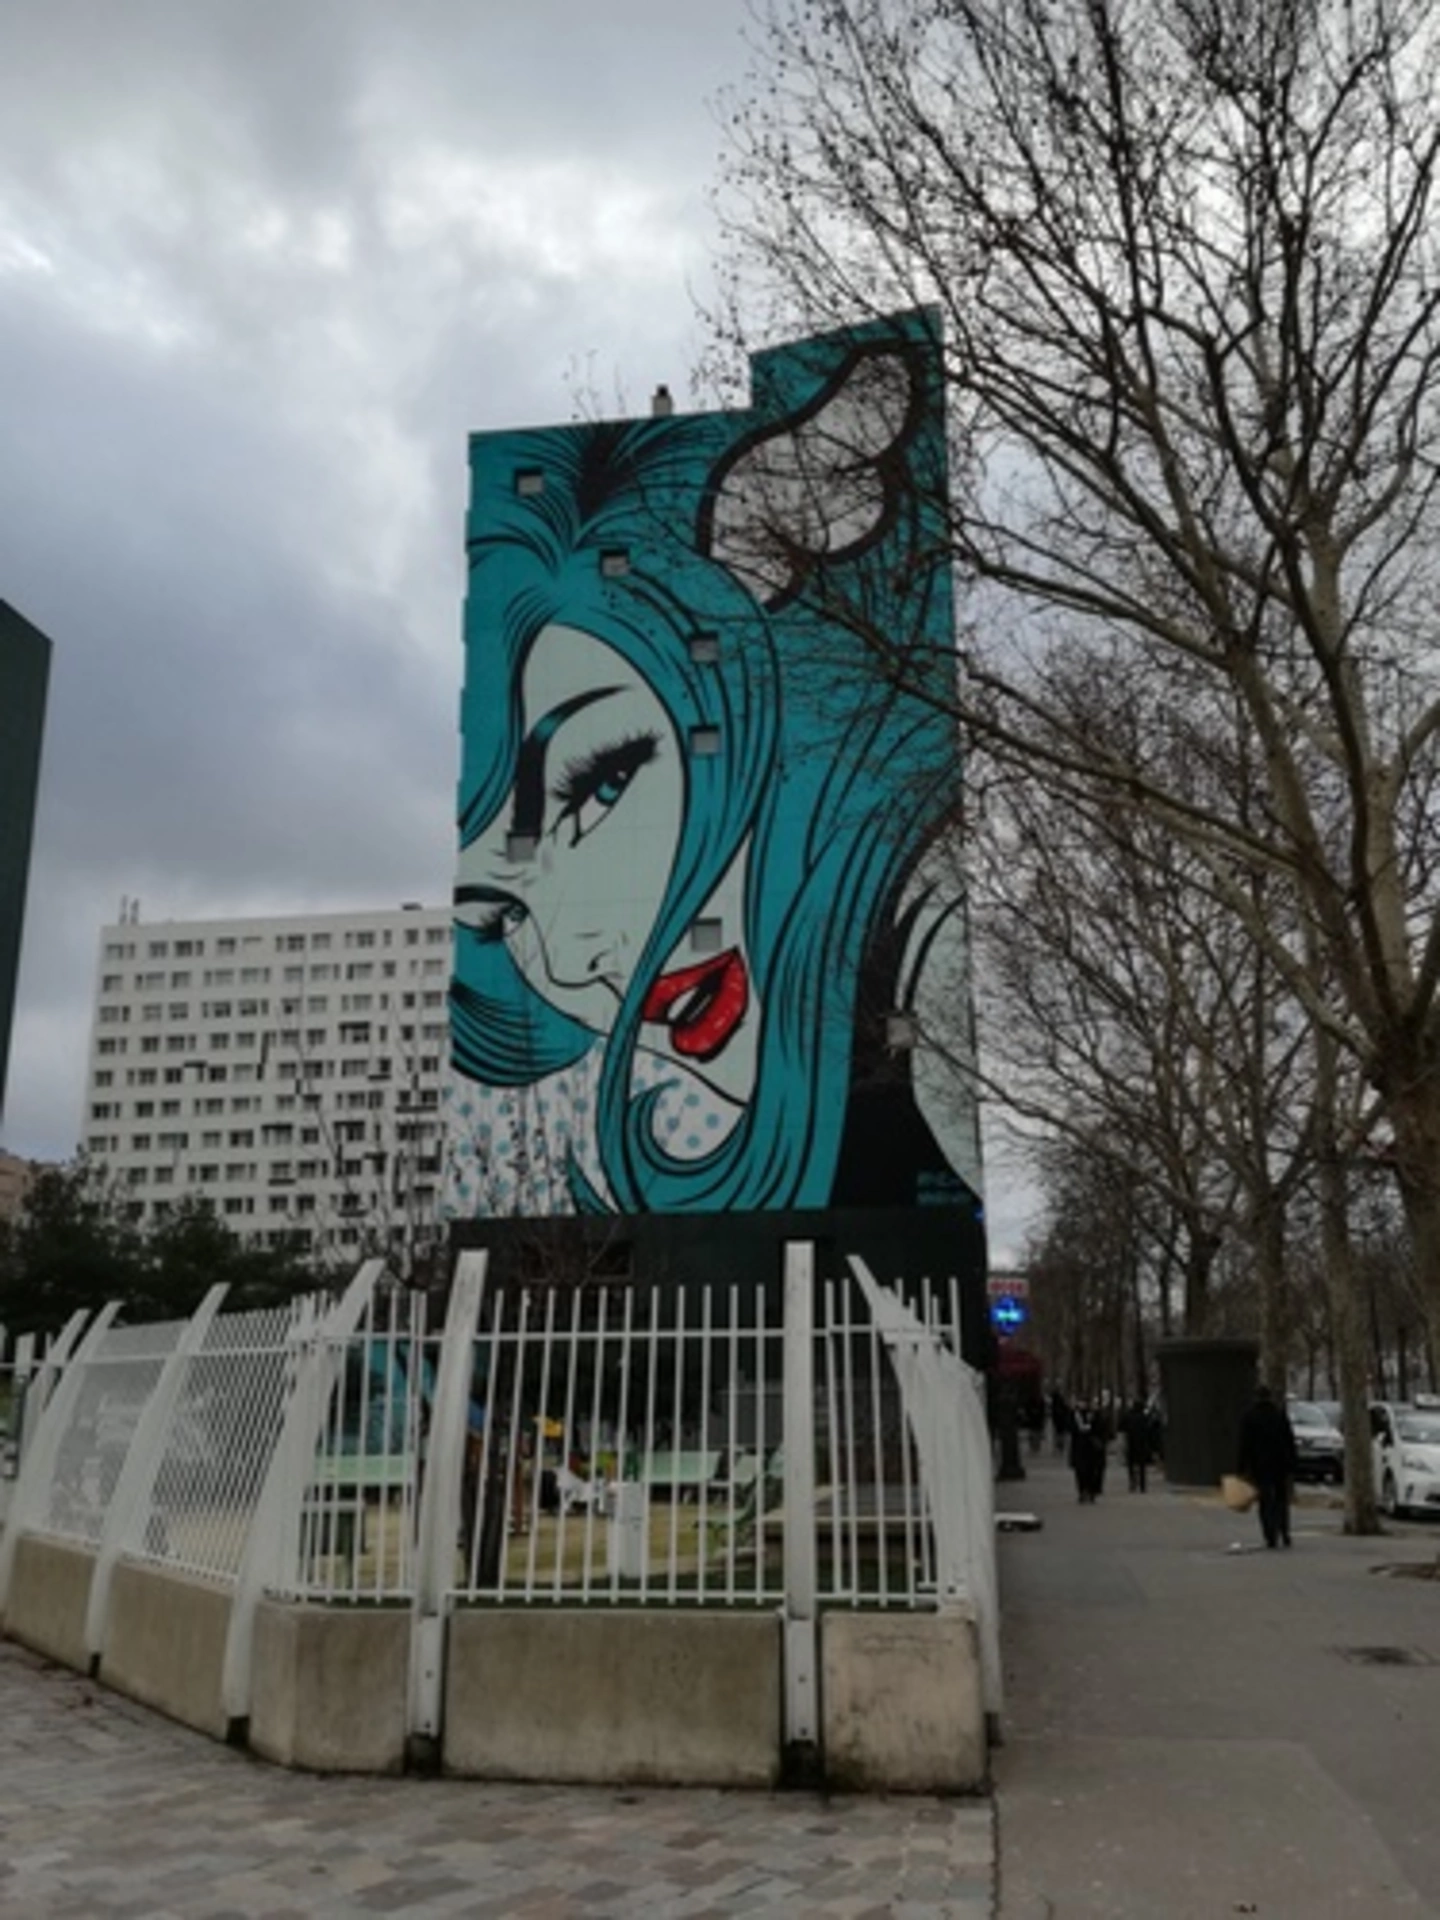 Oeuvre de Street Art réalisée par D*Face à Paris